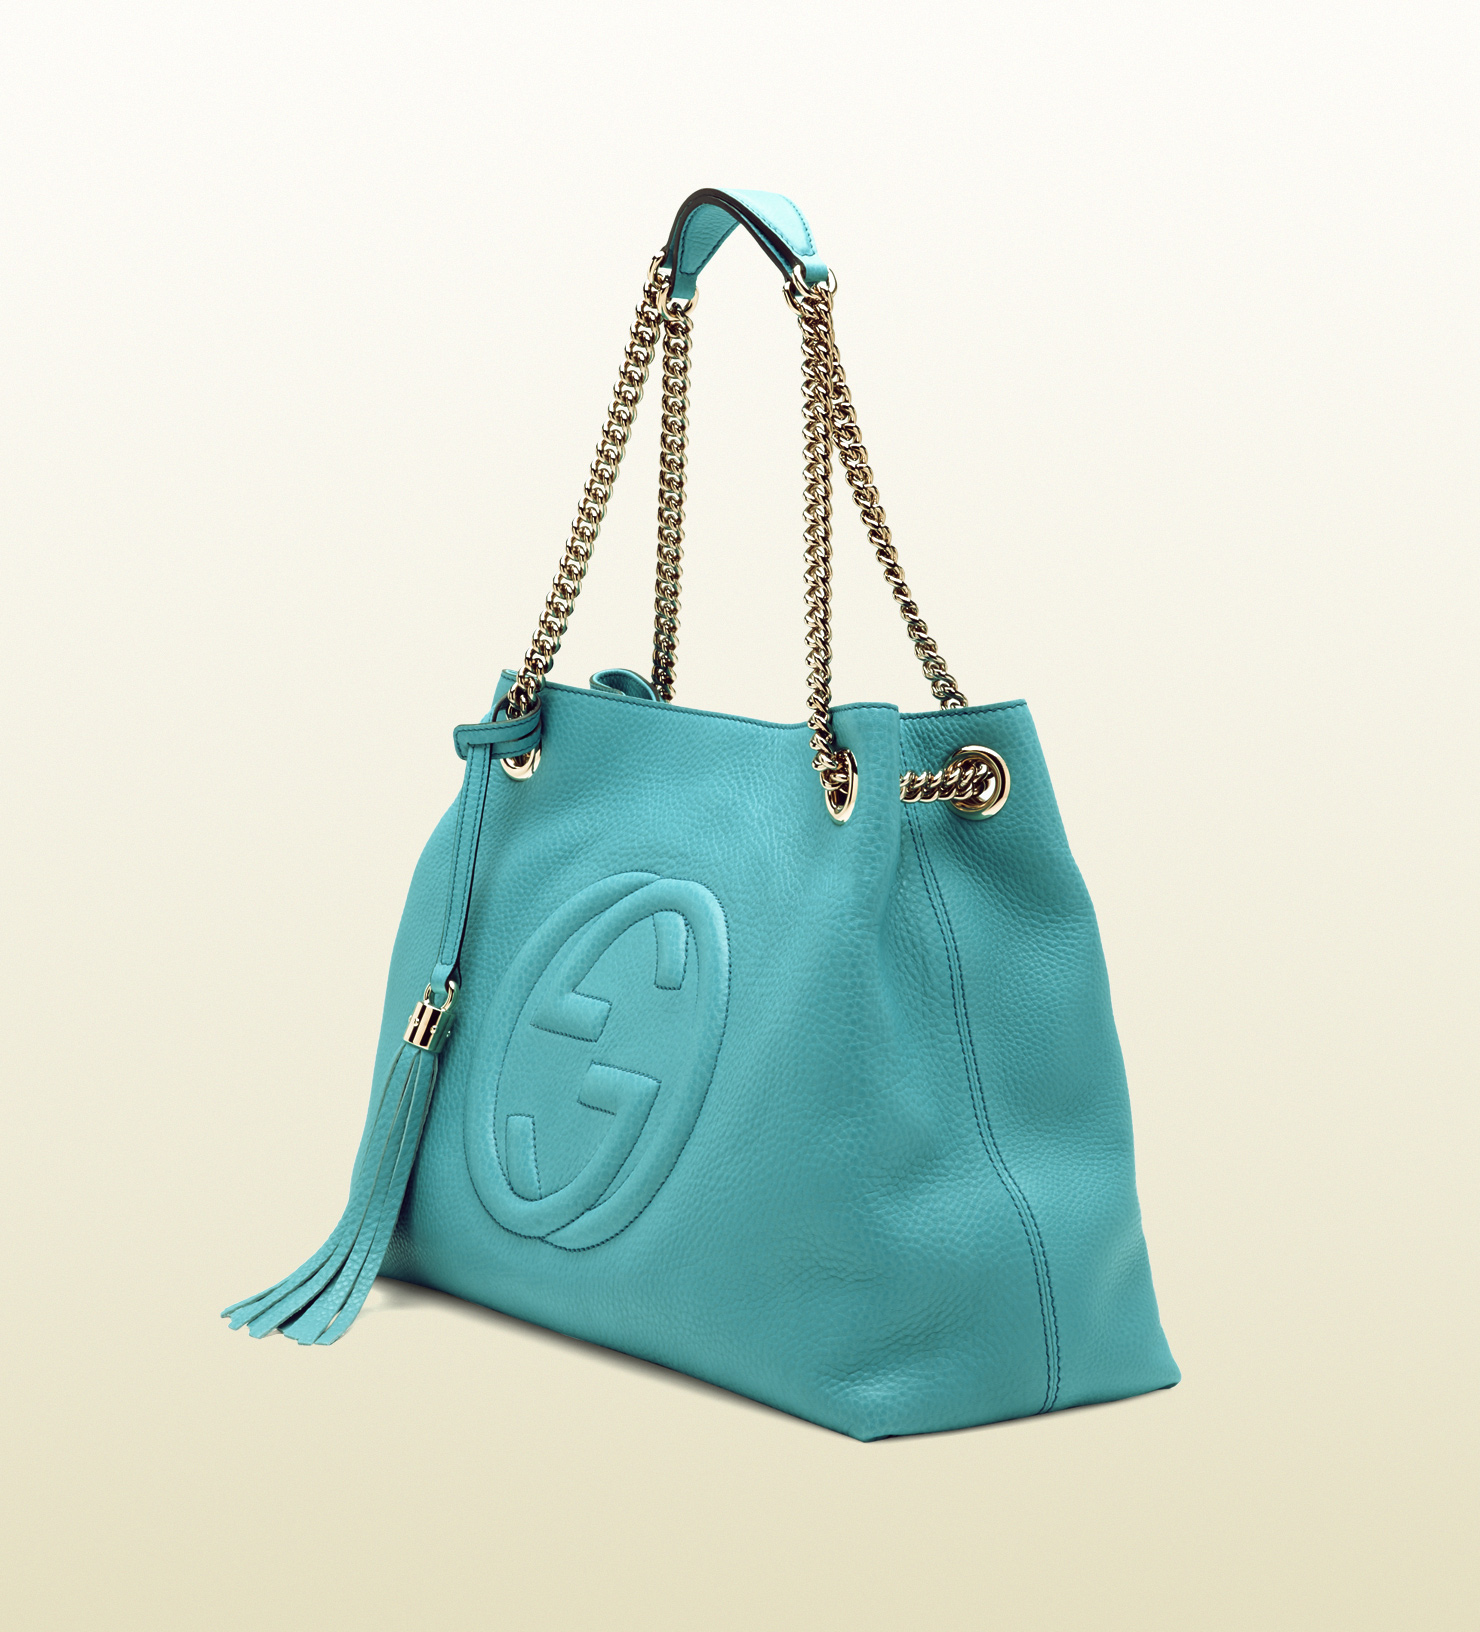 Lyst - Gucci Soho Light Blue Leather Shoulder Bag in Blue